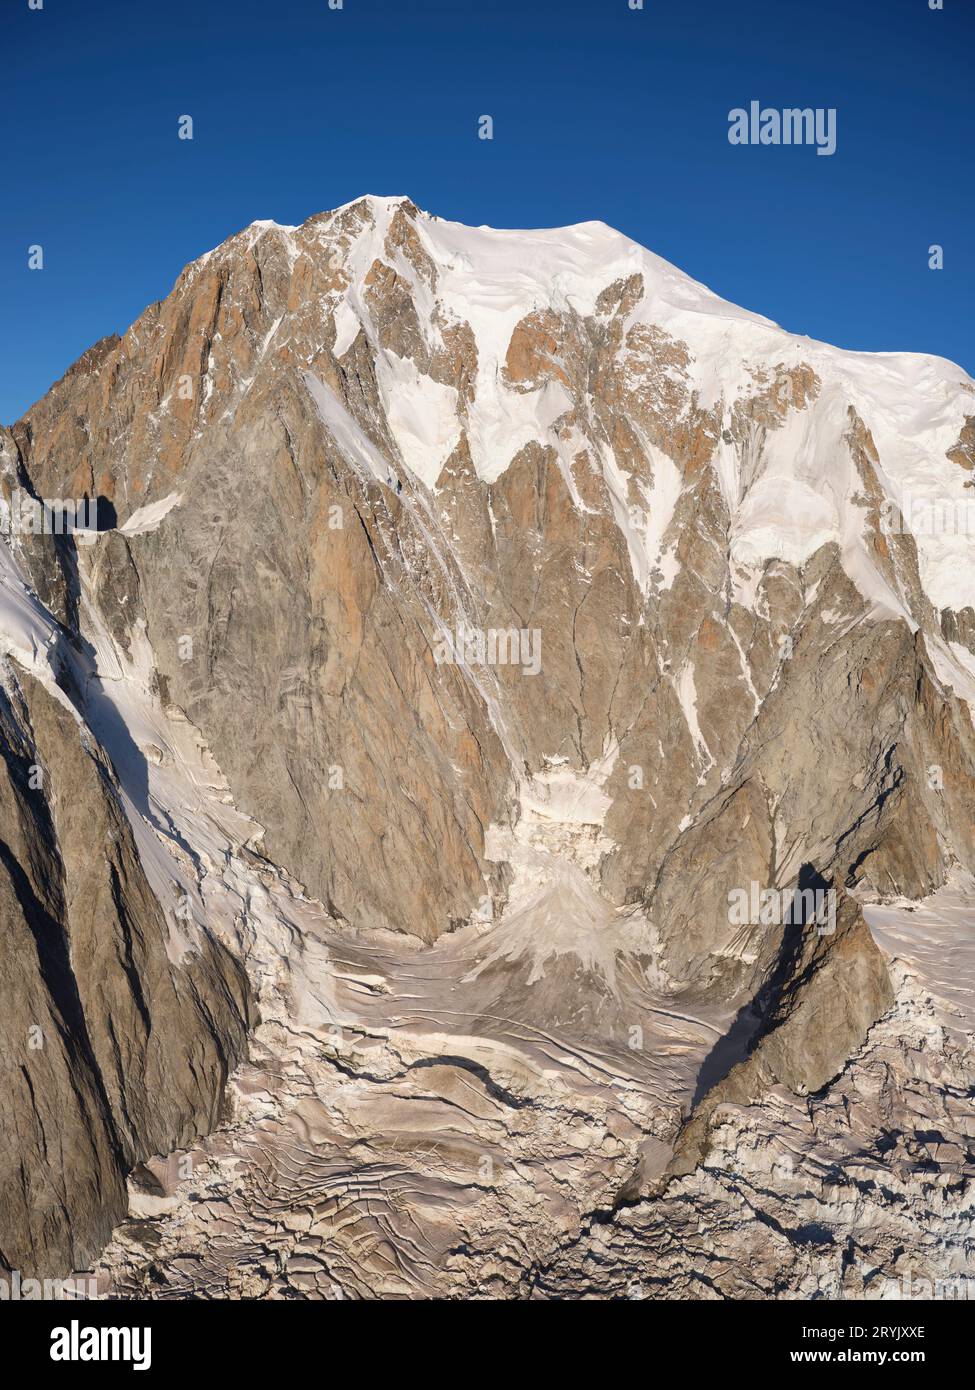 LUFTAUFNAHME. Die östliche große Mauer auf der italienischen Seite des Mont Blanc. Courmayeur, Aostatal, Italien. Stockfoto